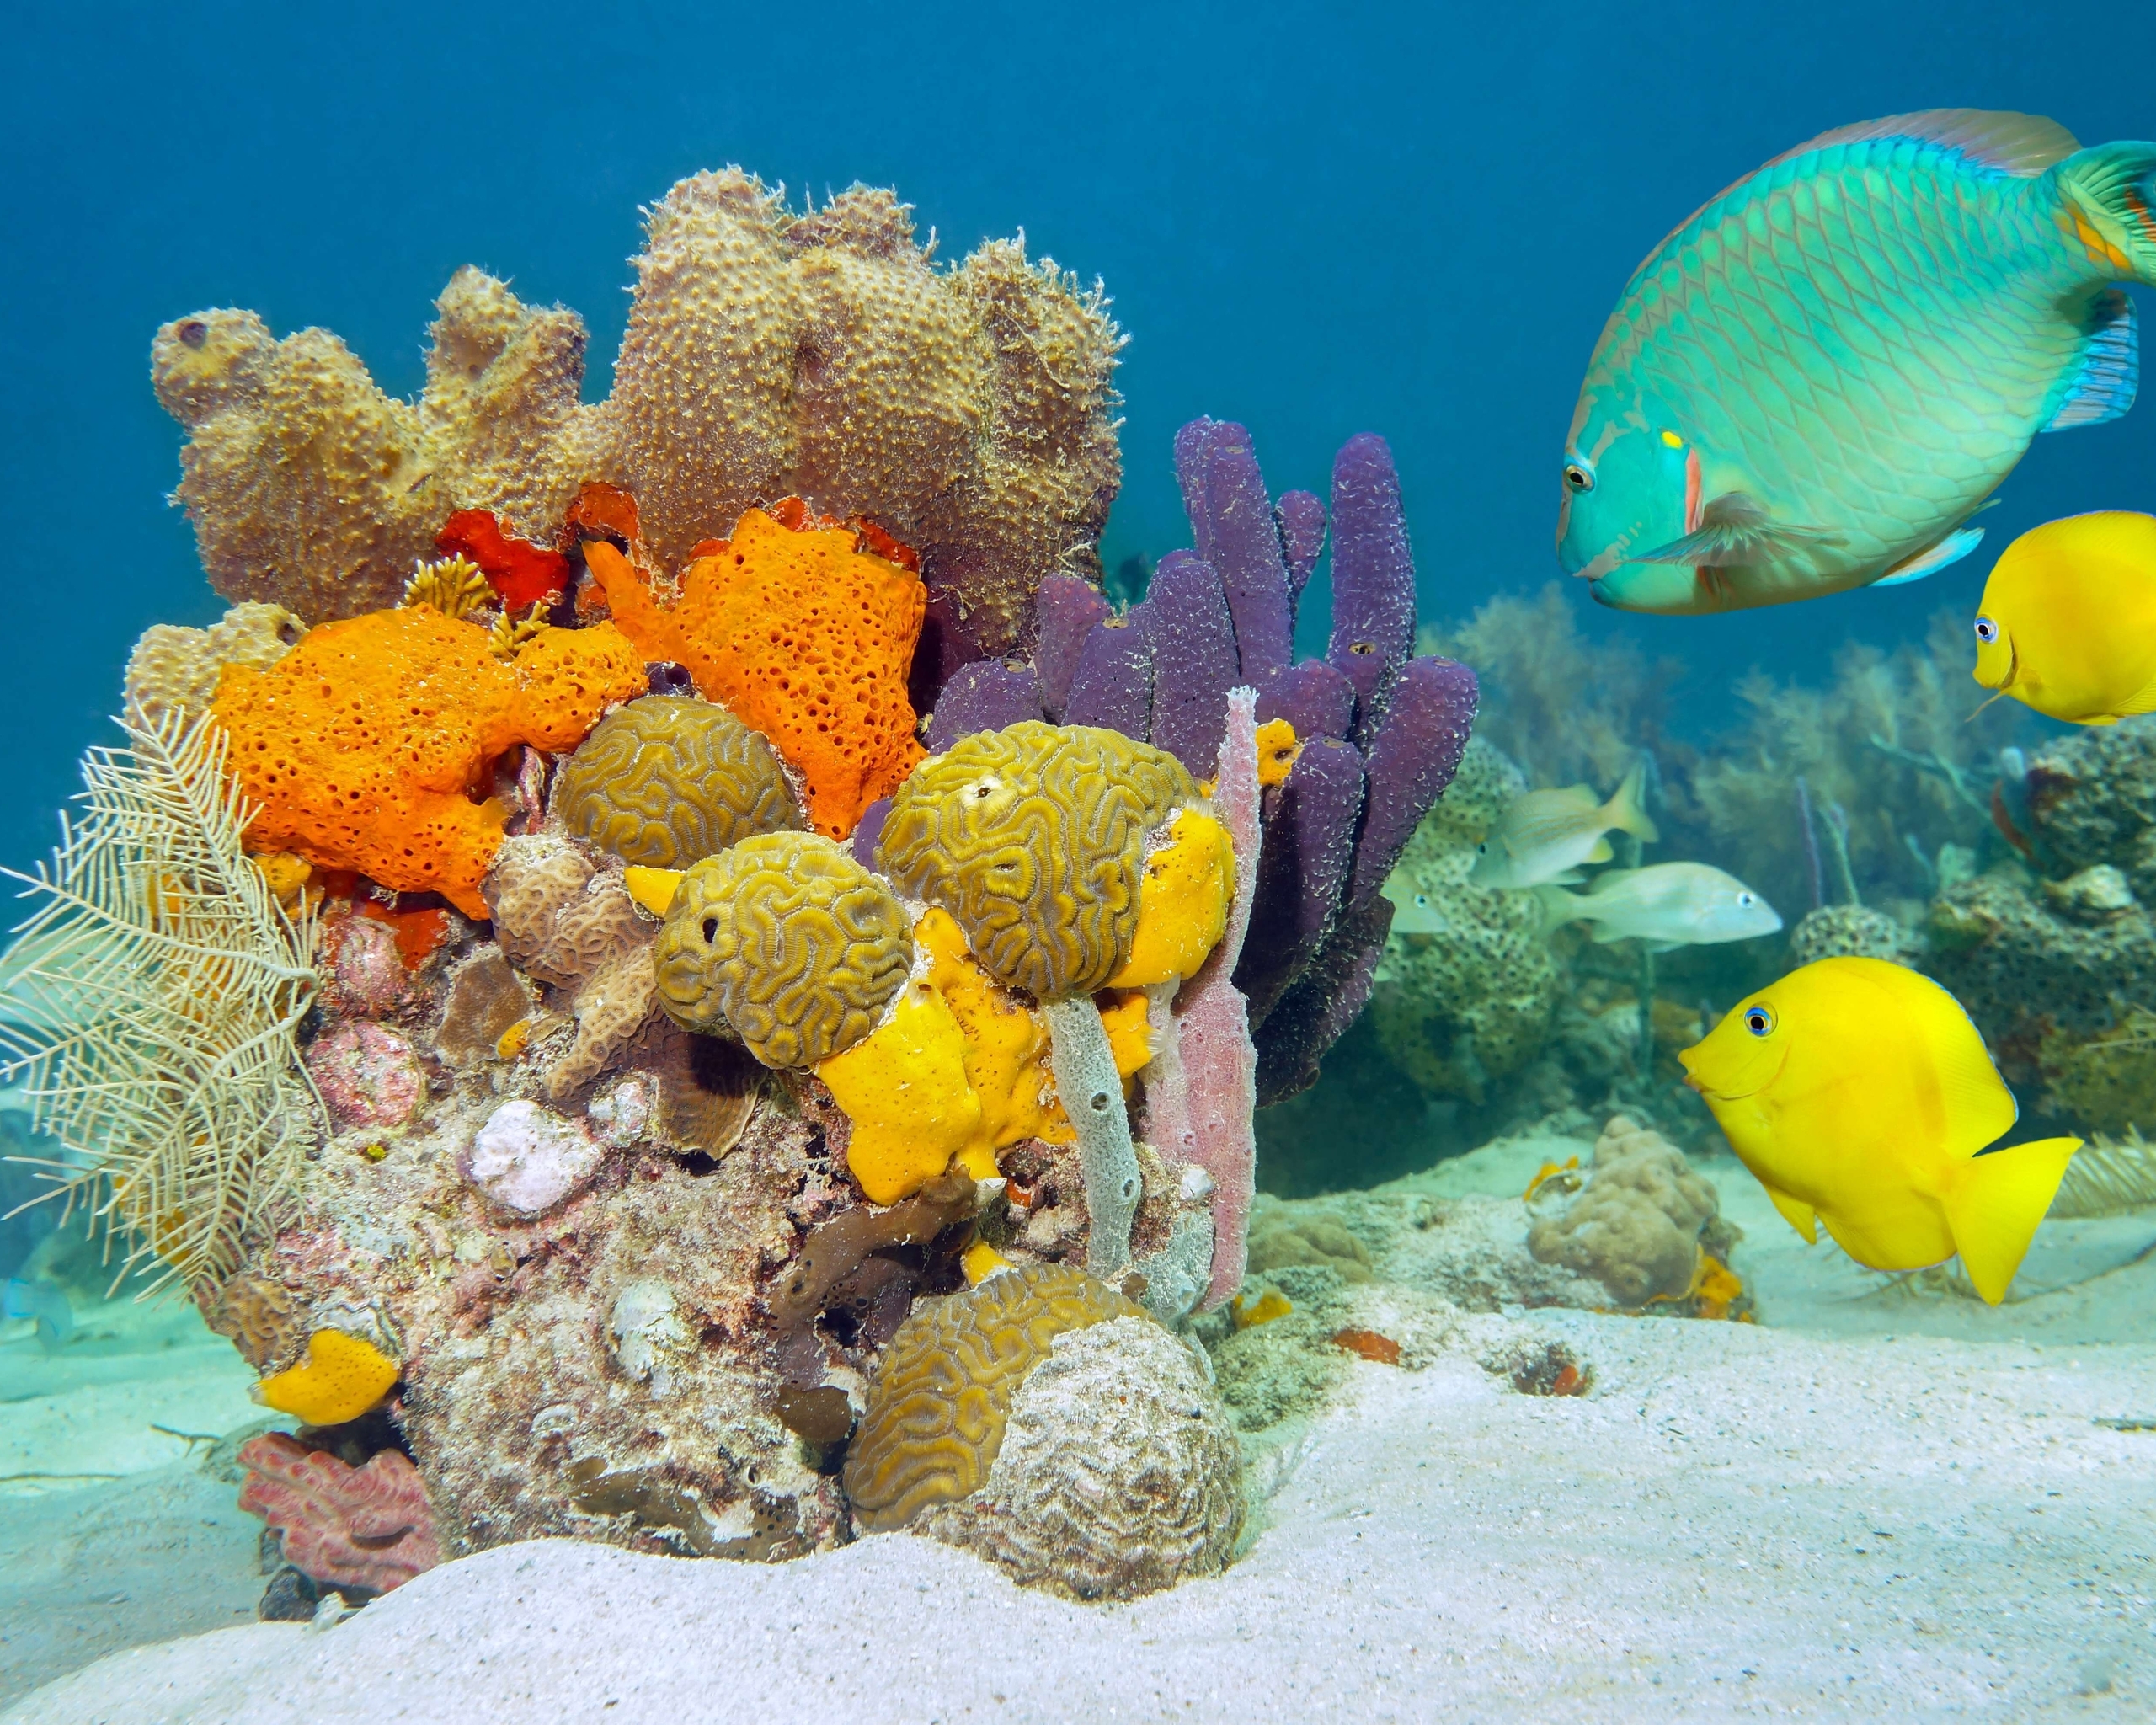 Картинка: Рыбы, кораллы, флора и фауна